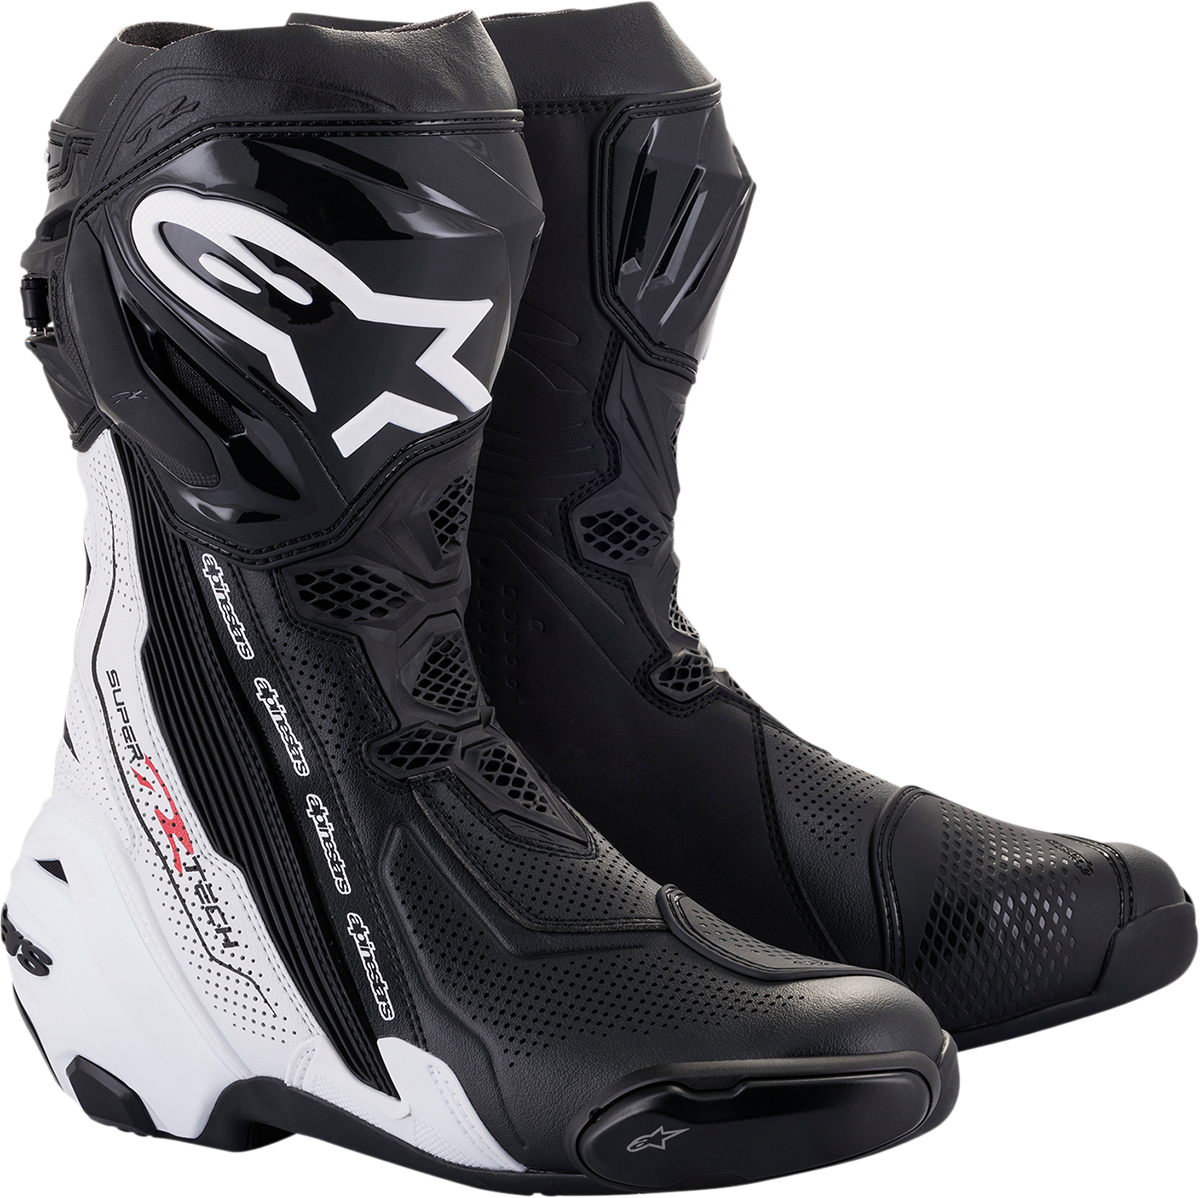 ALPINESTARS Supertech V Boots - Black/White - US 9.5 / EU 44 2220121-12-44